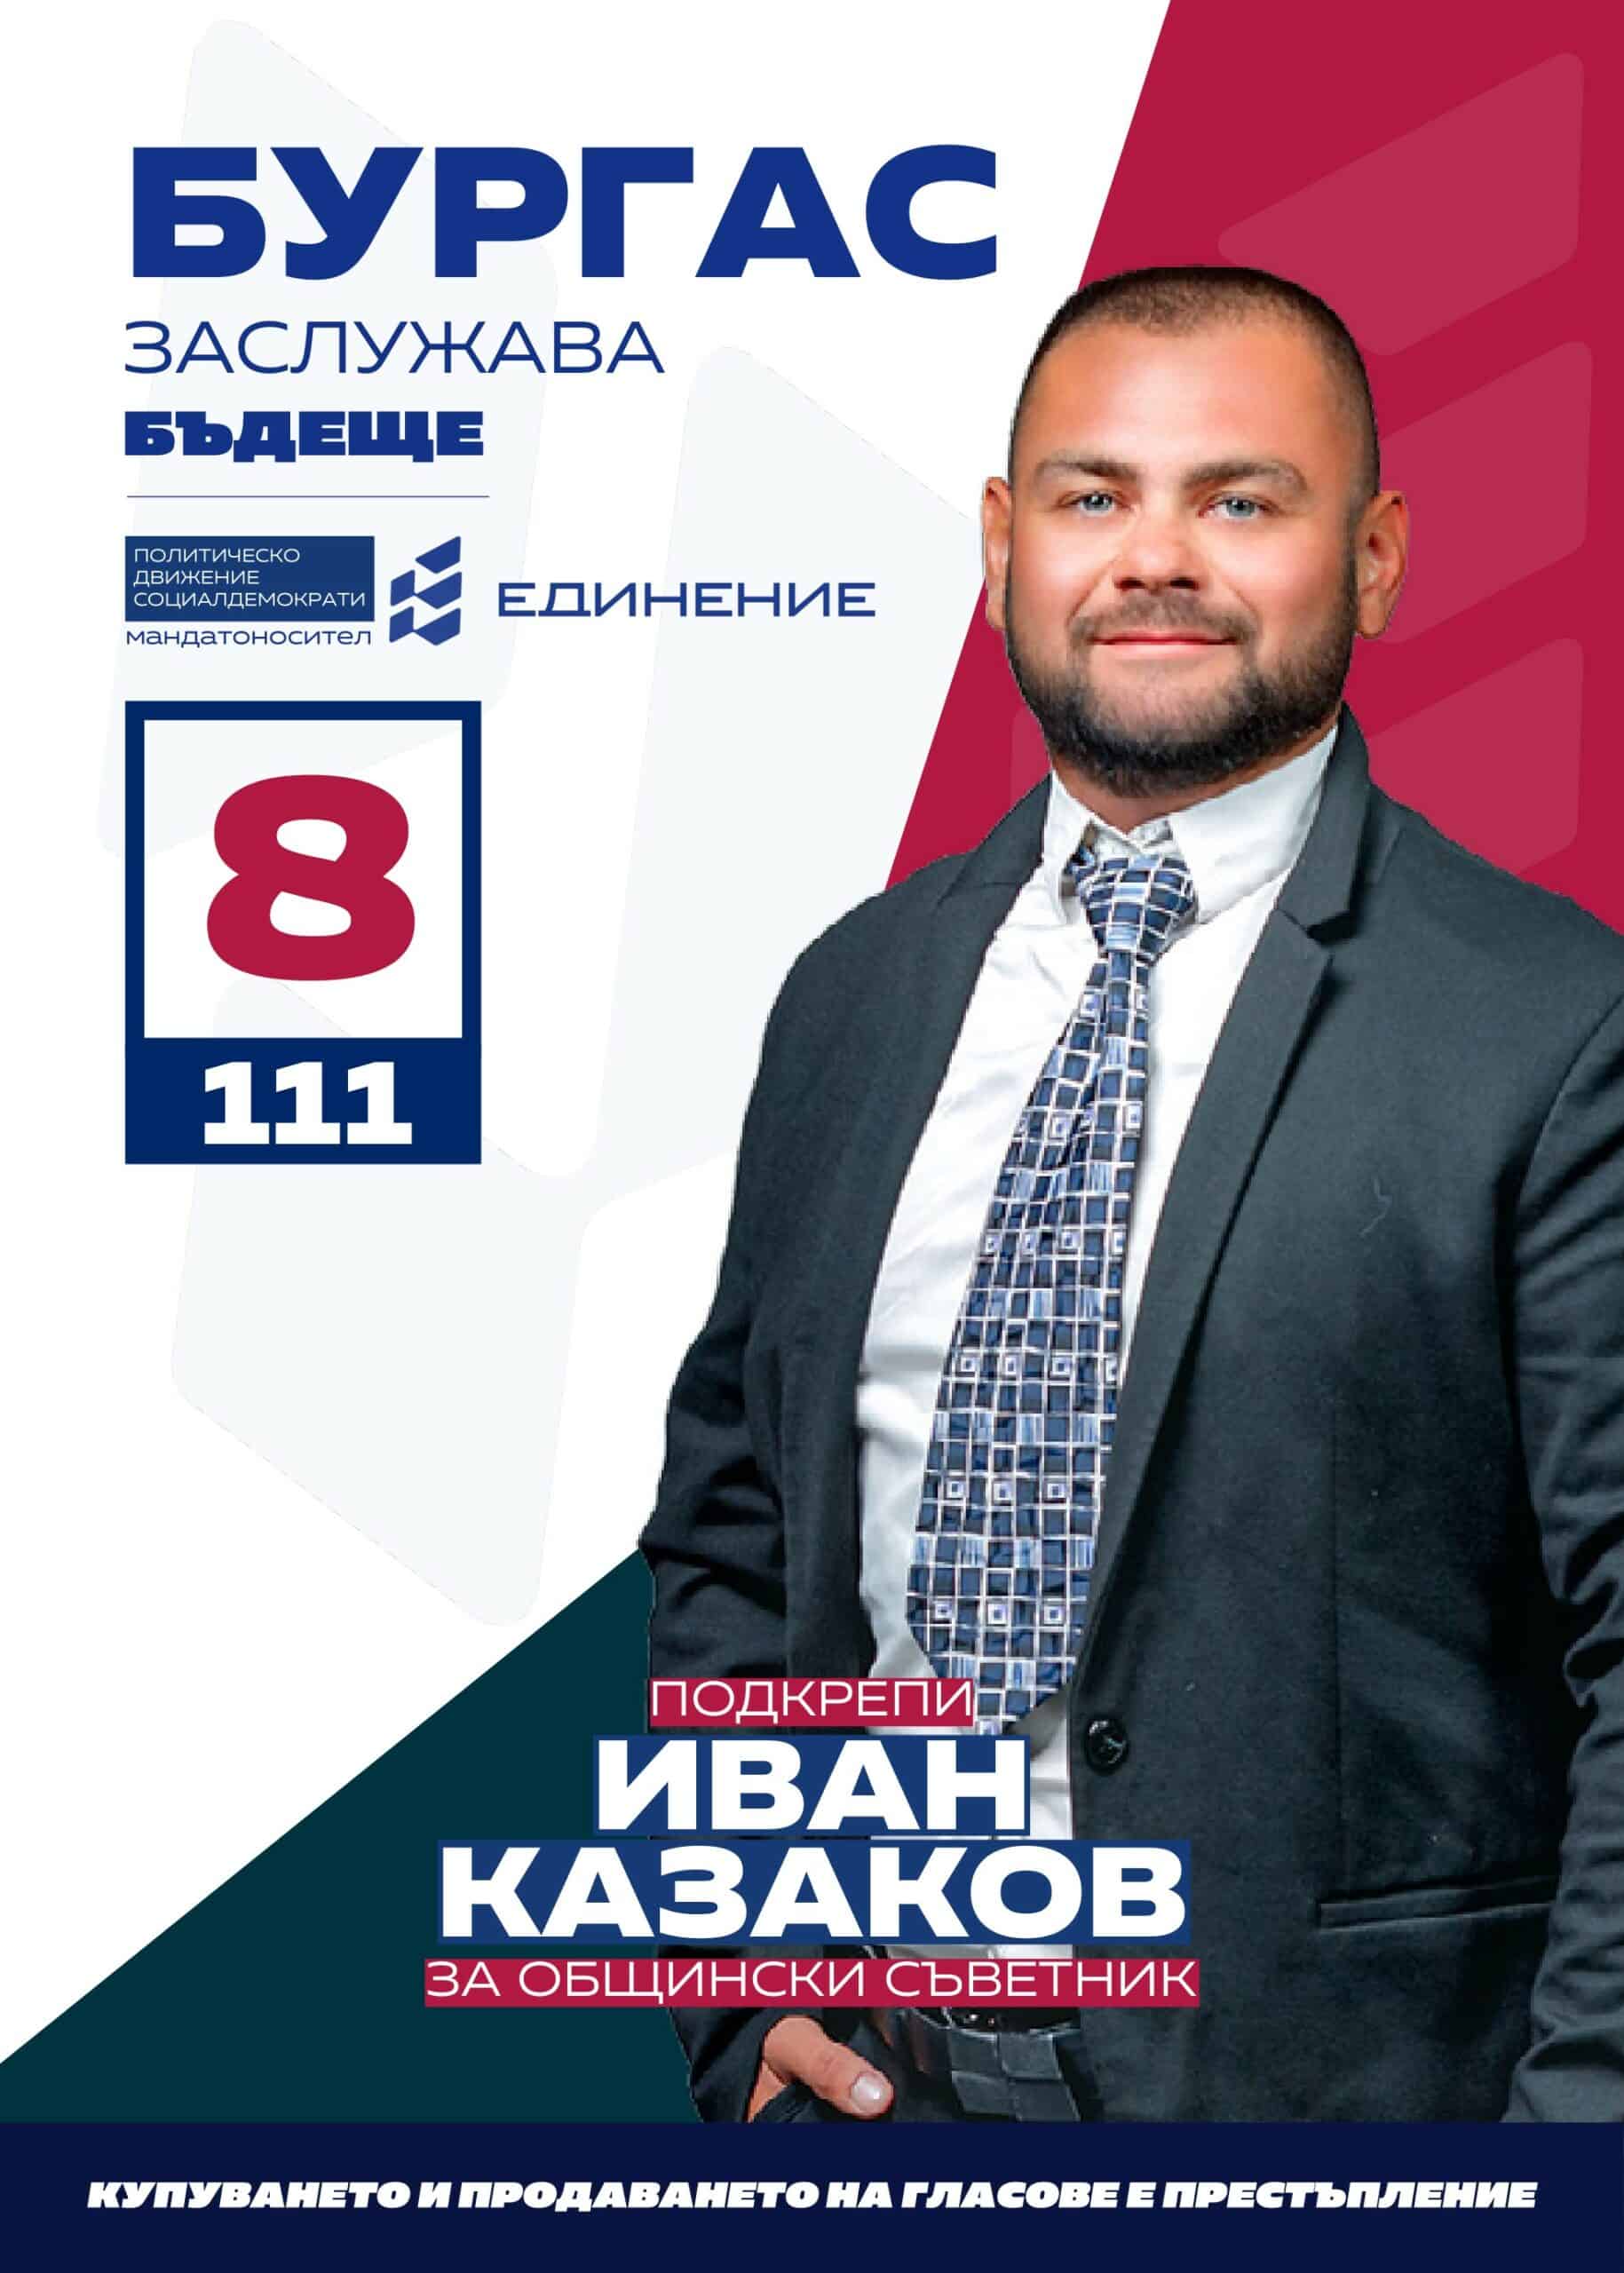 Иван Казаков – общественик
Кандидатът за общински съветник на ПП Единение